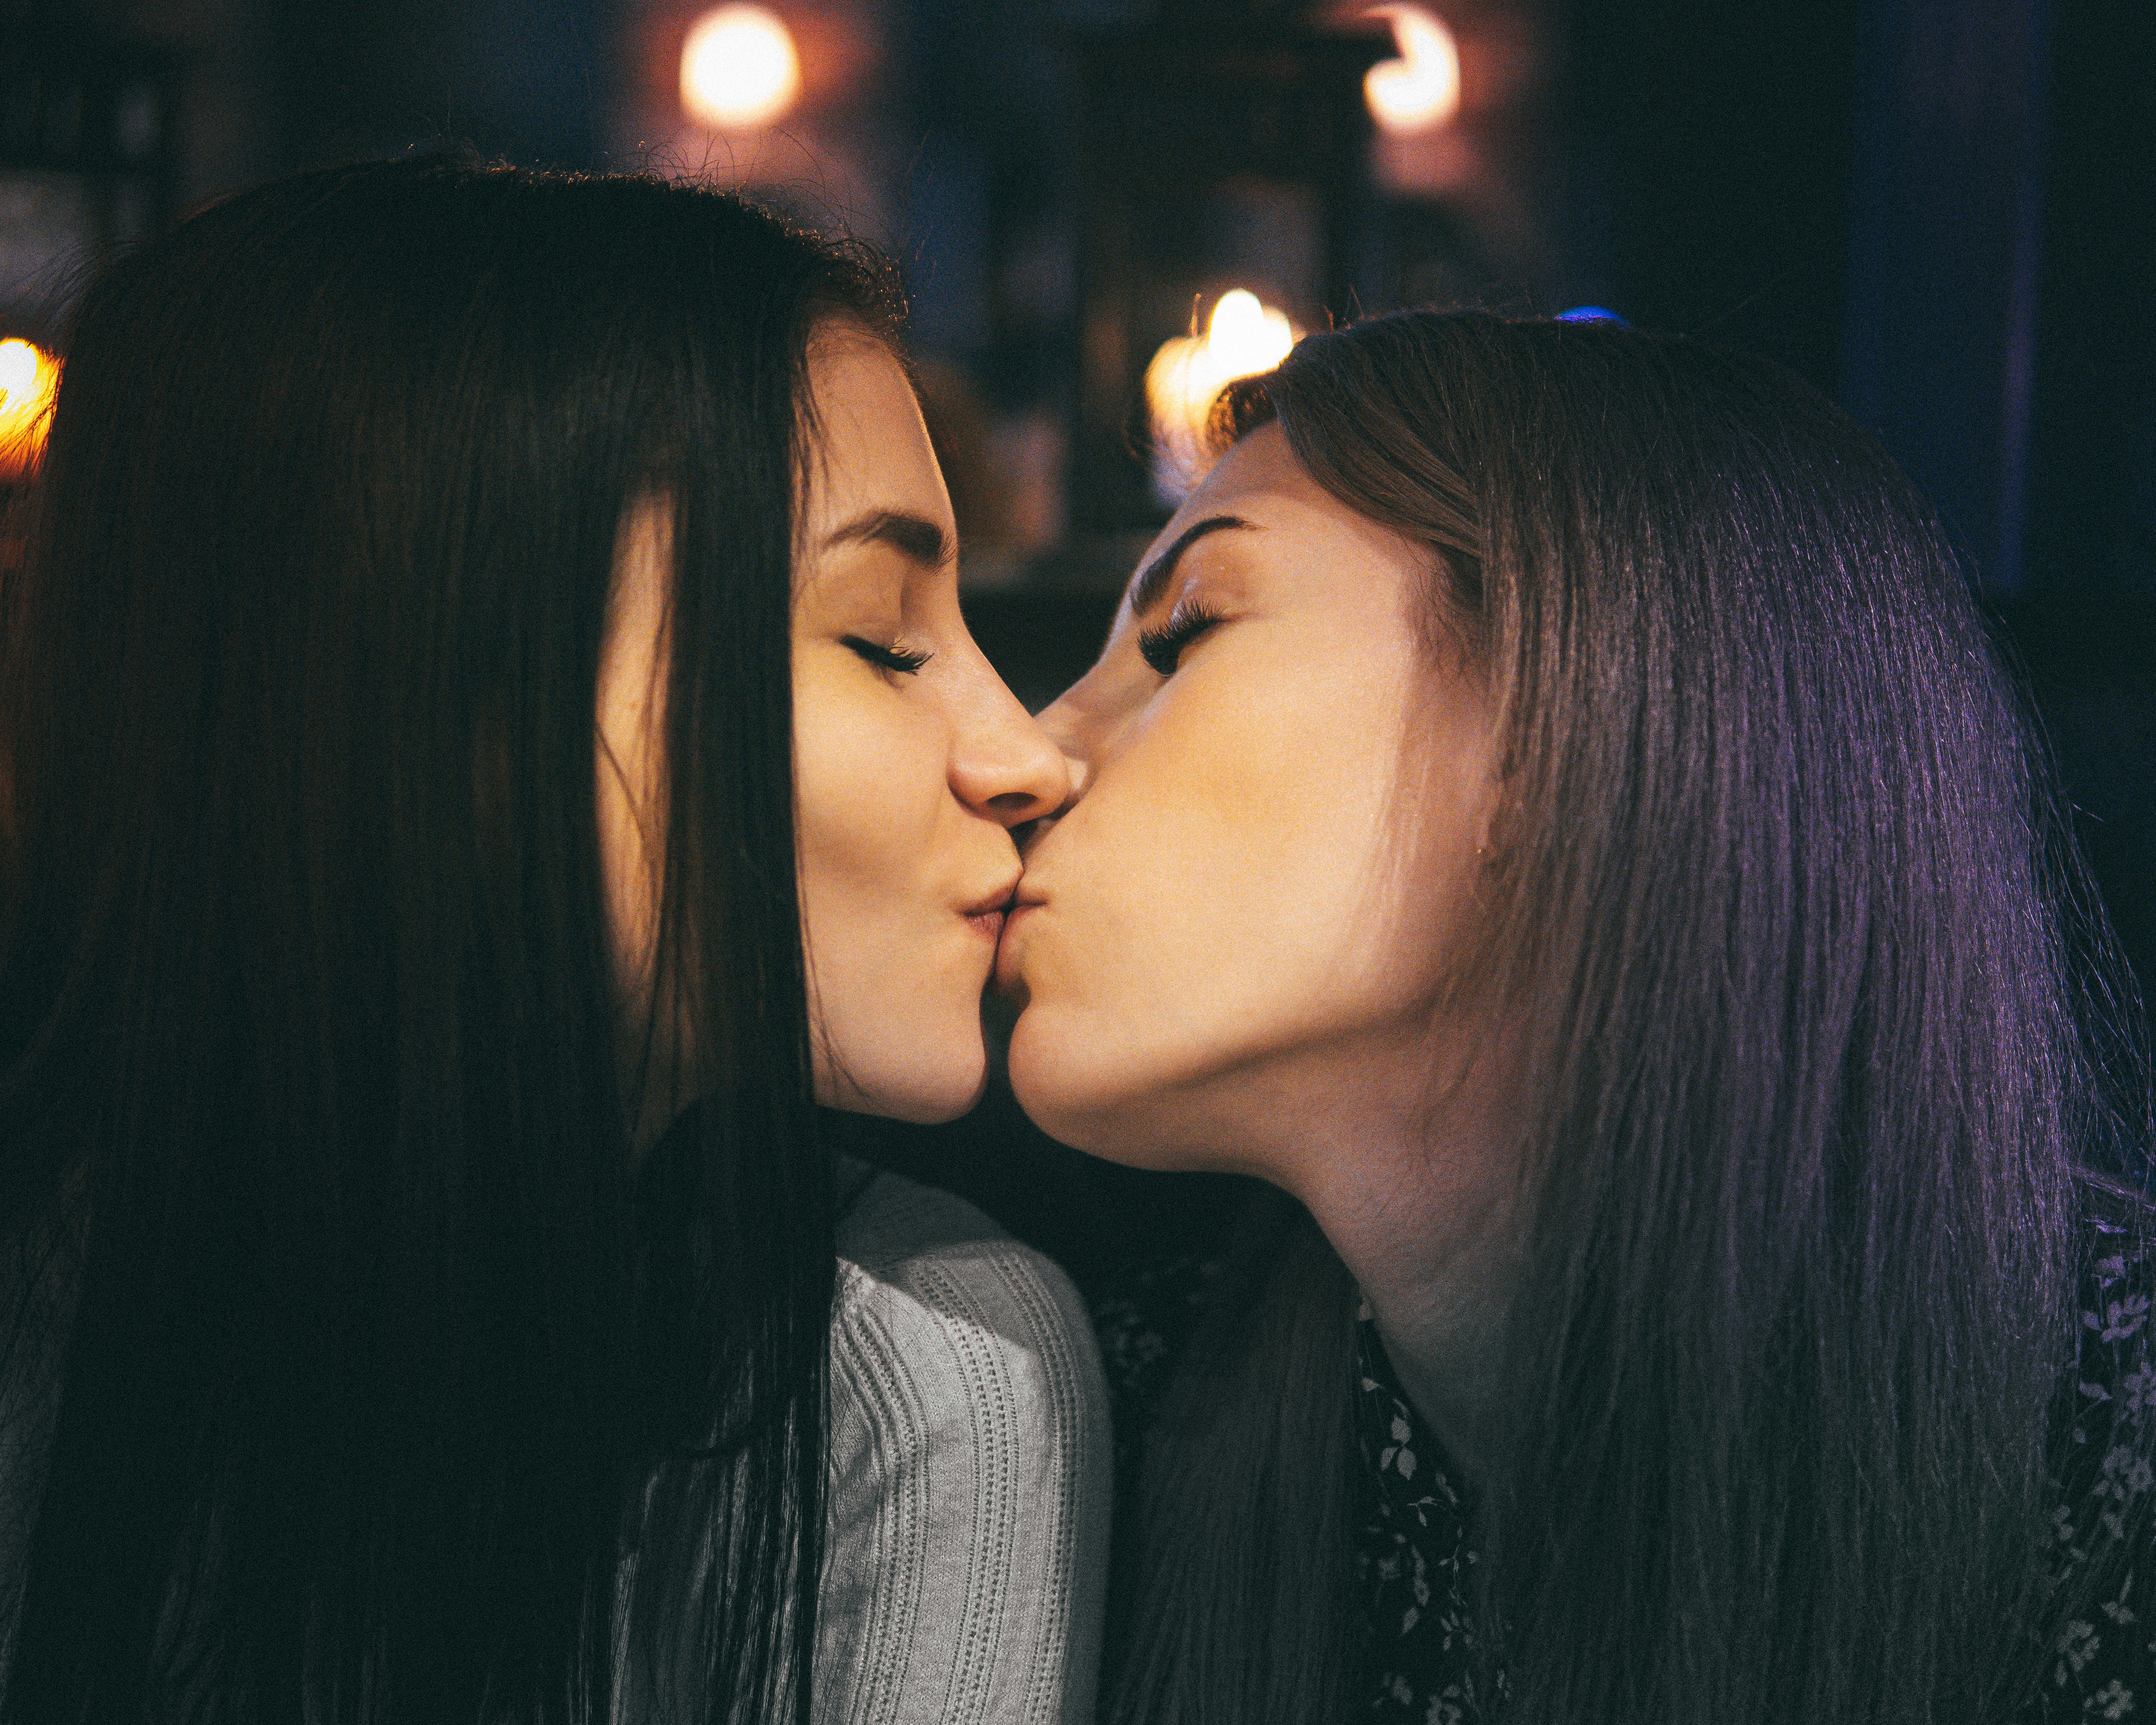 Two girls lick. Поцелуй девушек. Поцелуй двух девушек. Красивый лесбийский поцелуй. Девушка целует девушку.